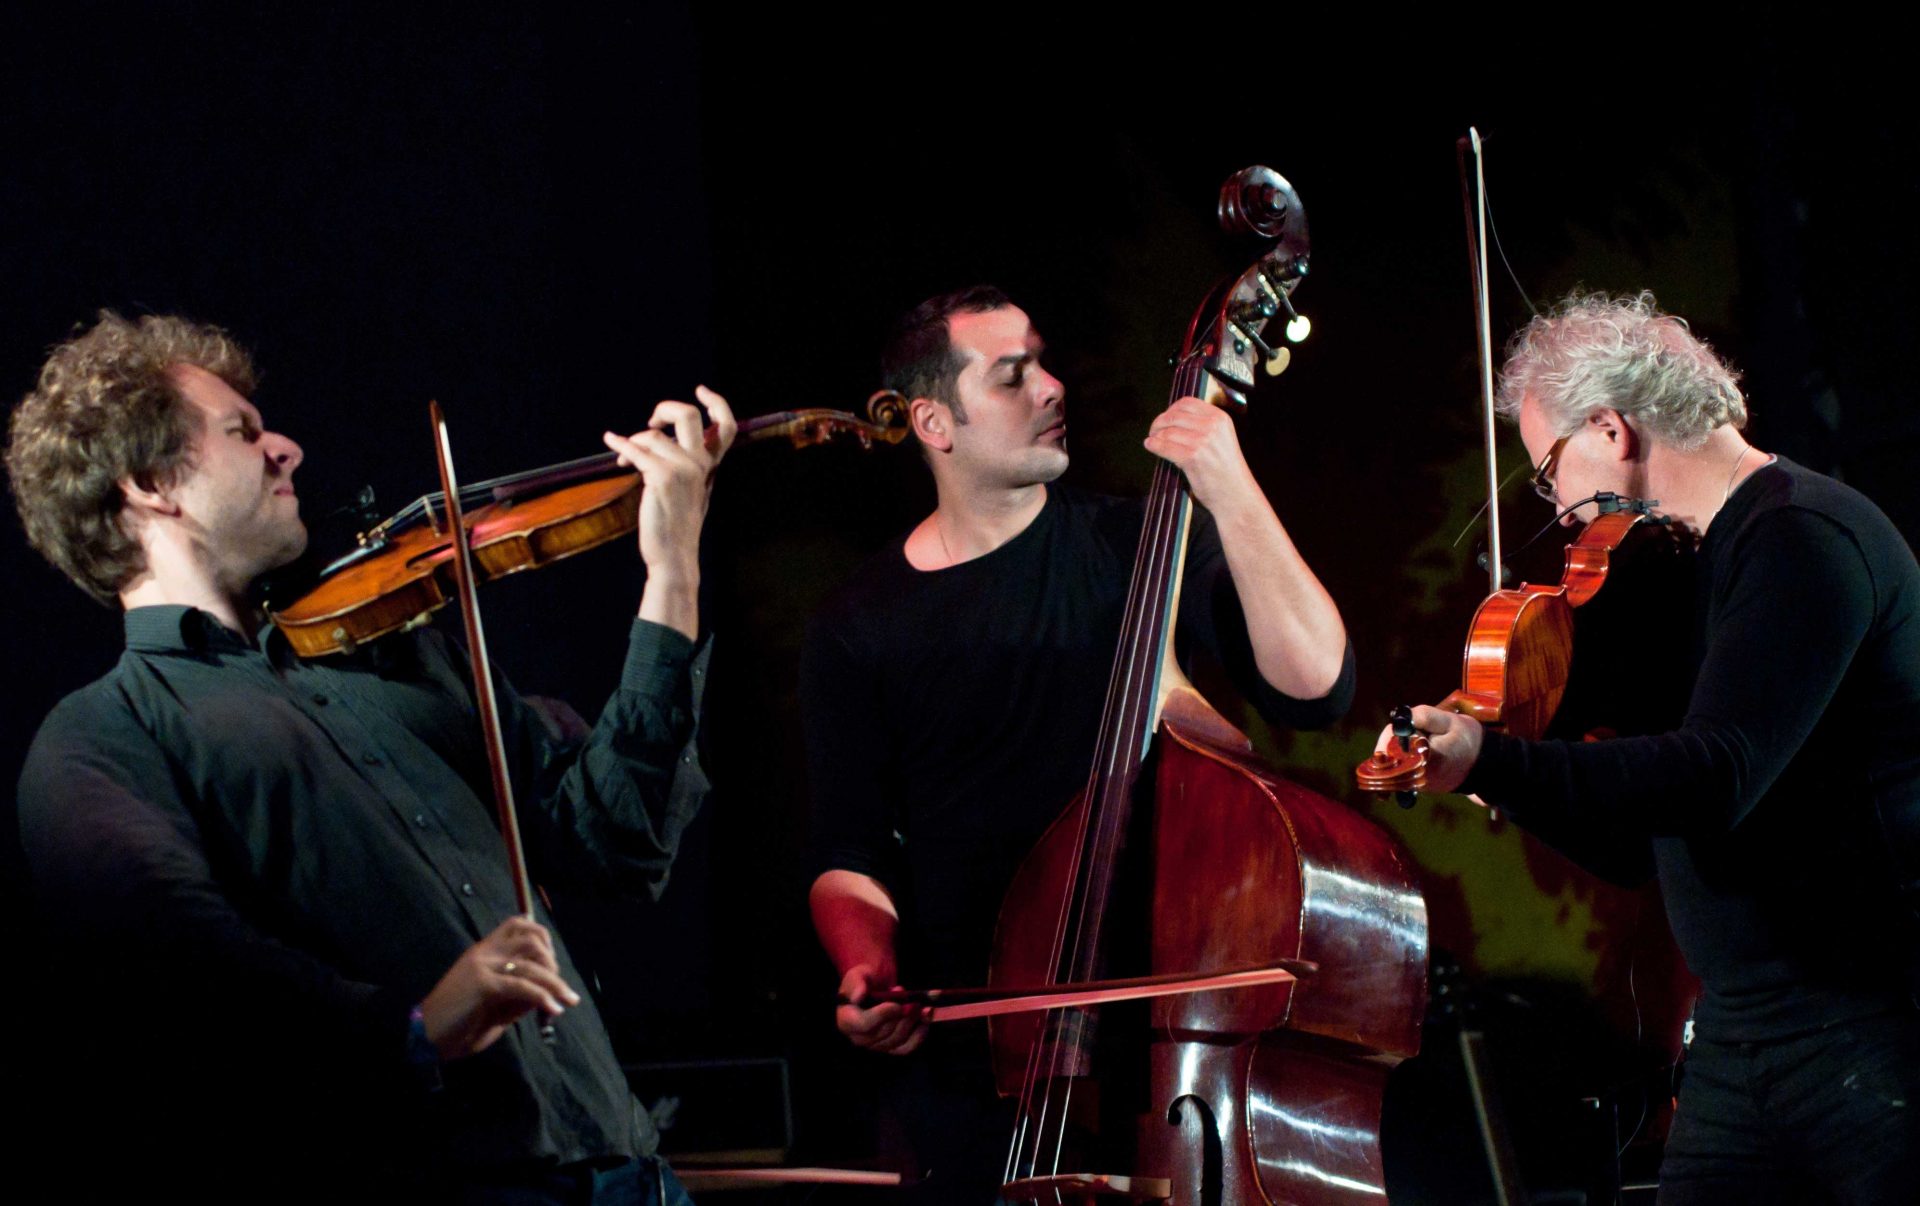 Двоє музикантів грають на скрипках, а третій музикант — на контрабасі смичком на нічній сцені фестивалю в Унежі